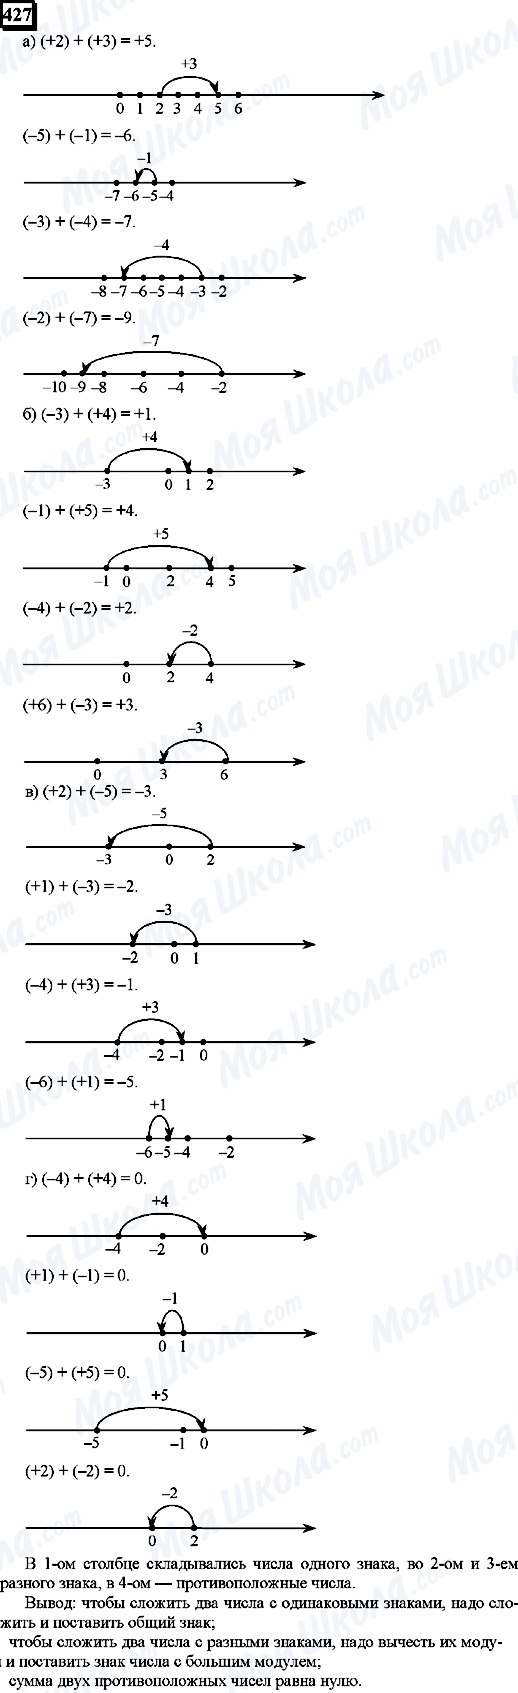 ГДЗ Математика 6 класс страница 427